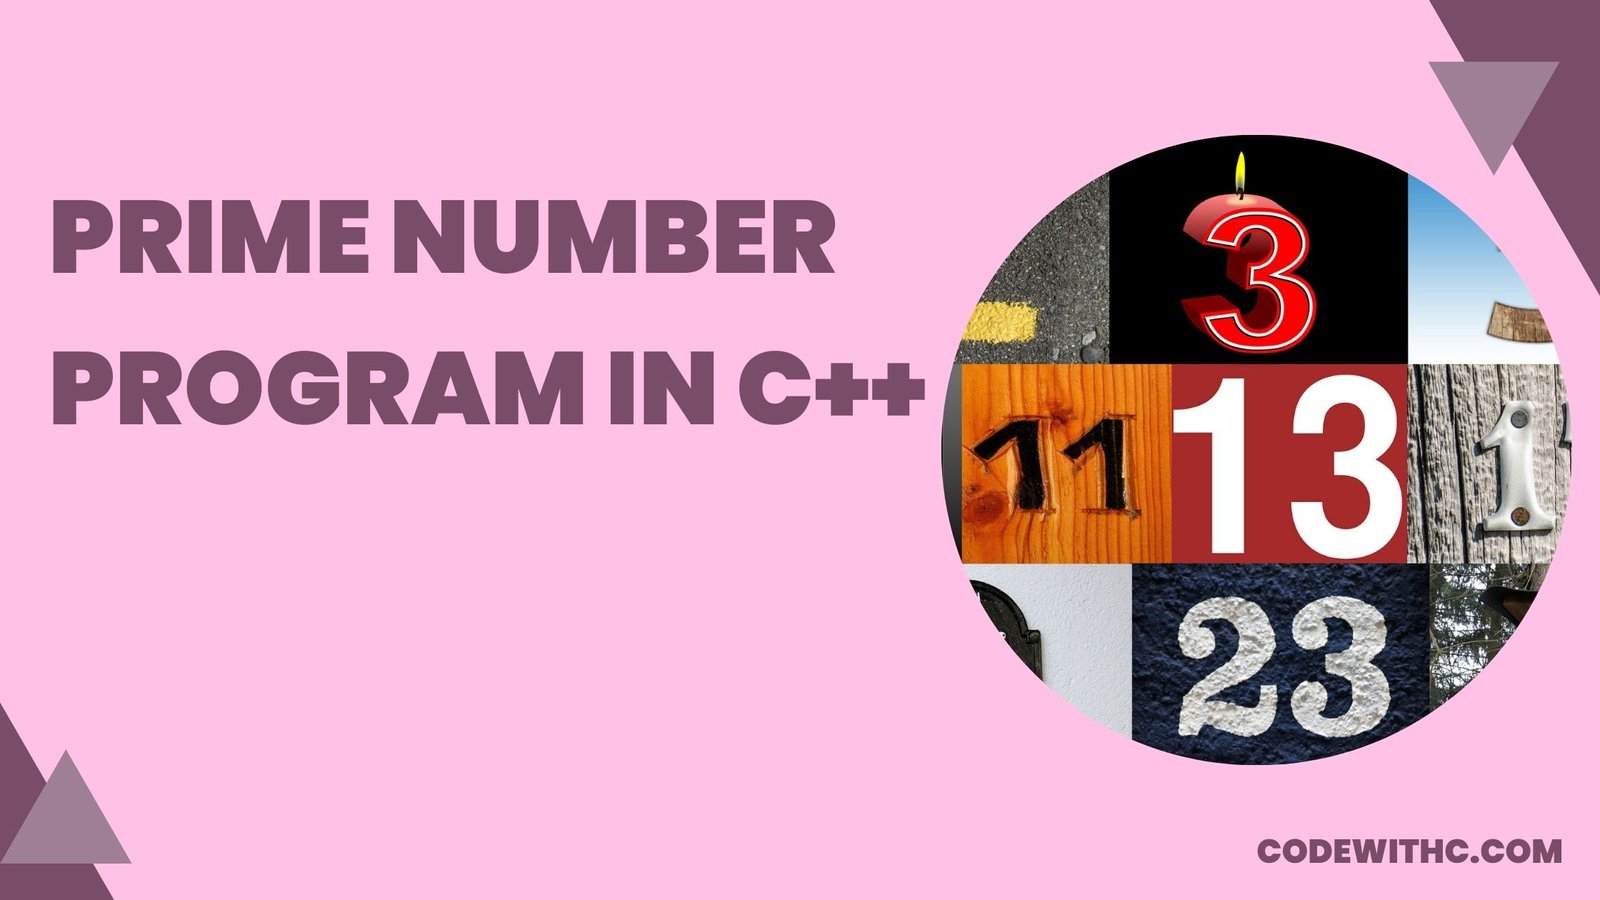 Prime Number Program in C++